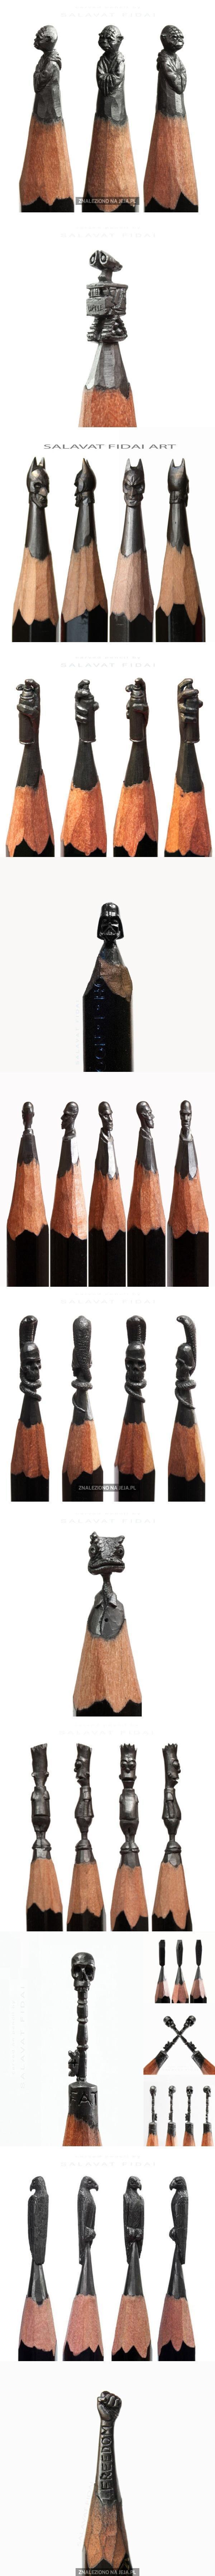 Precyzyjne rzeźbienie w ołówkach